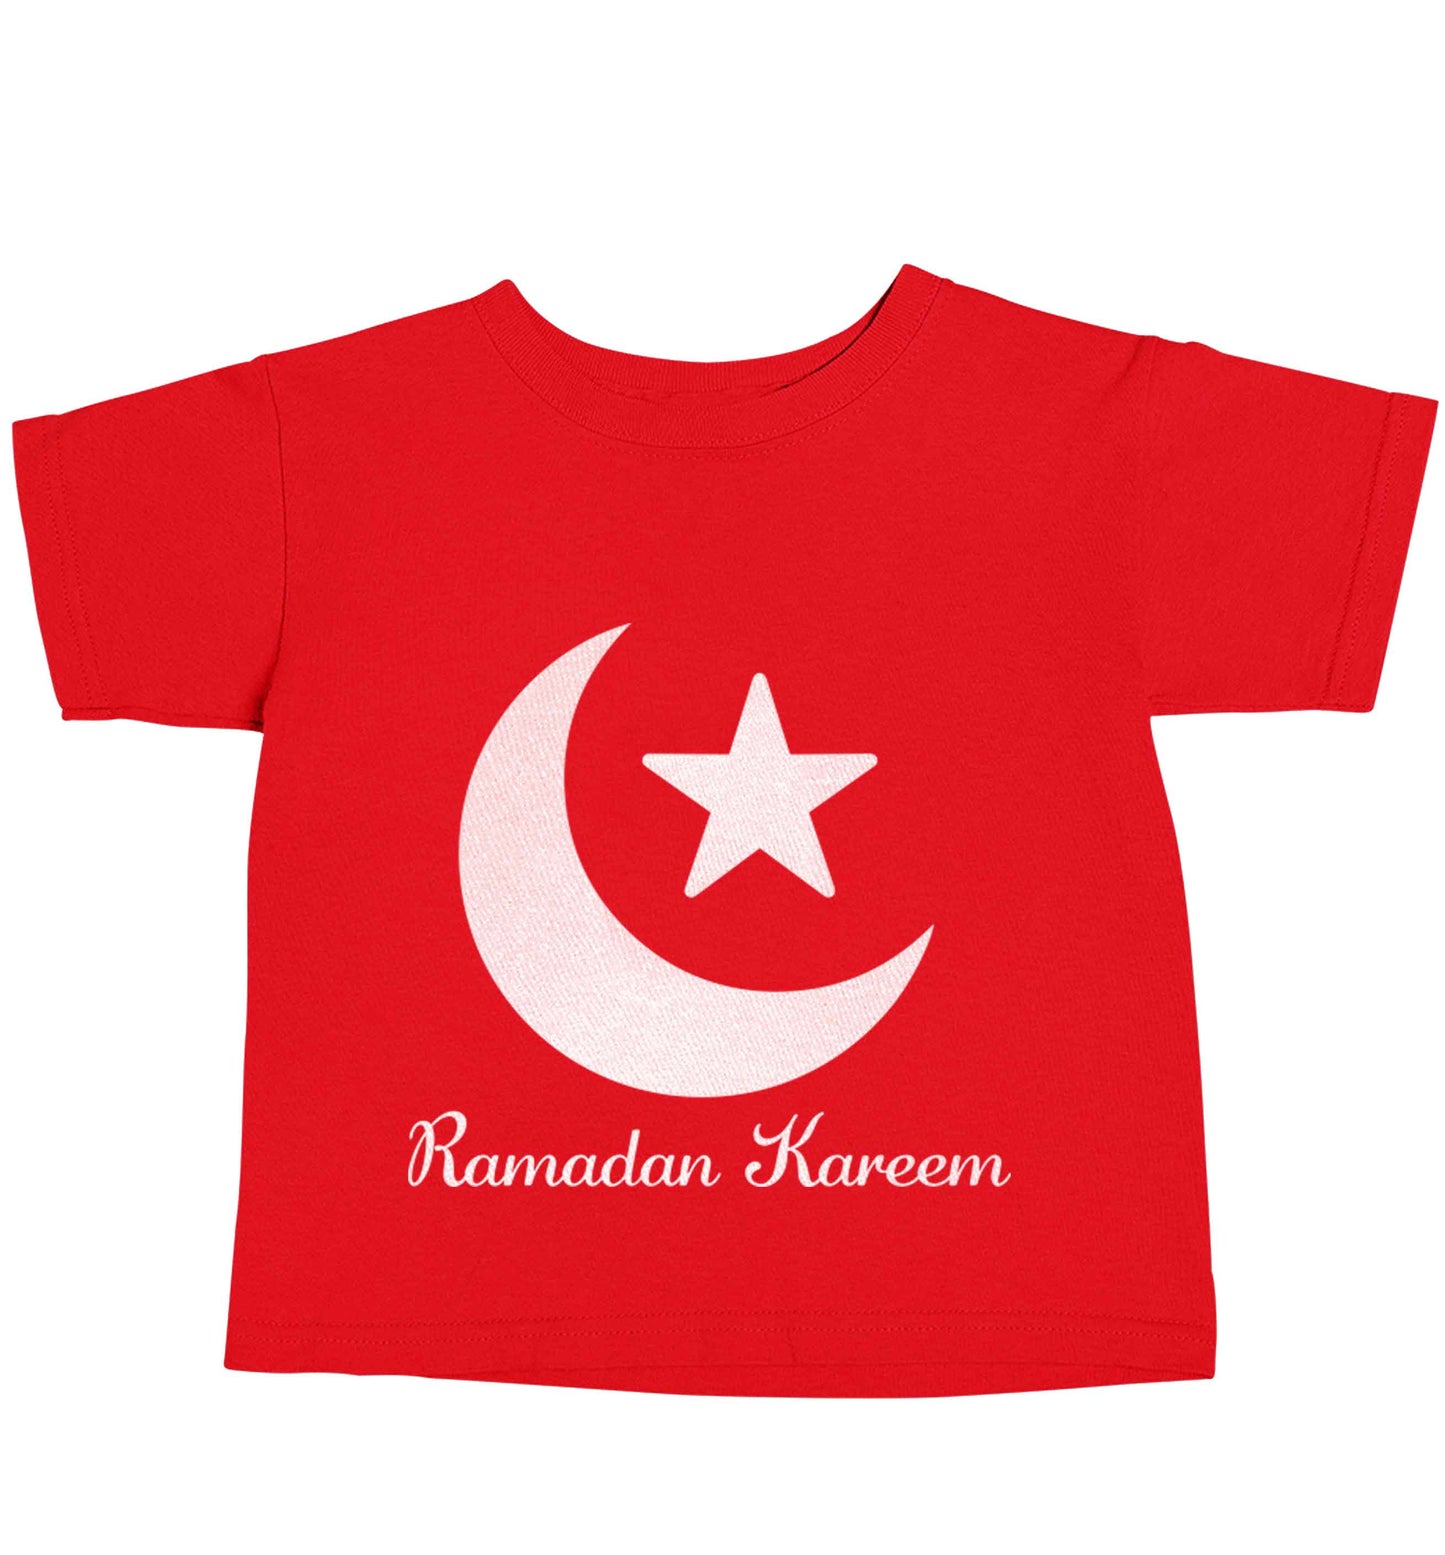 Ramadan kareem red baby toddler Tshirt 2 Years